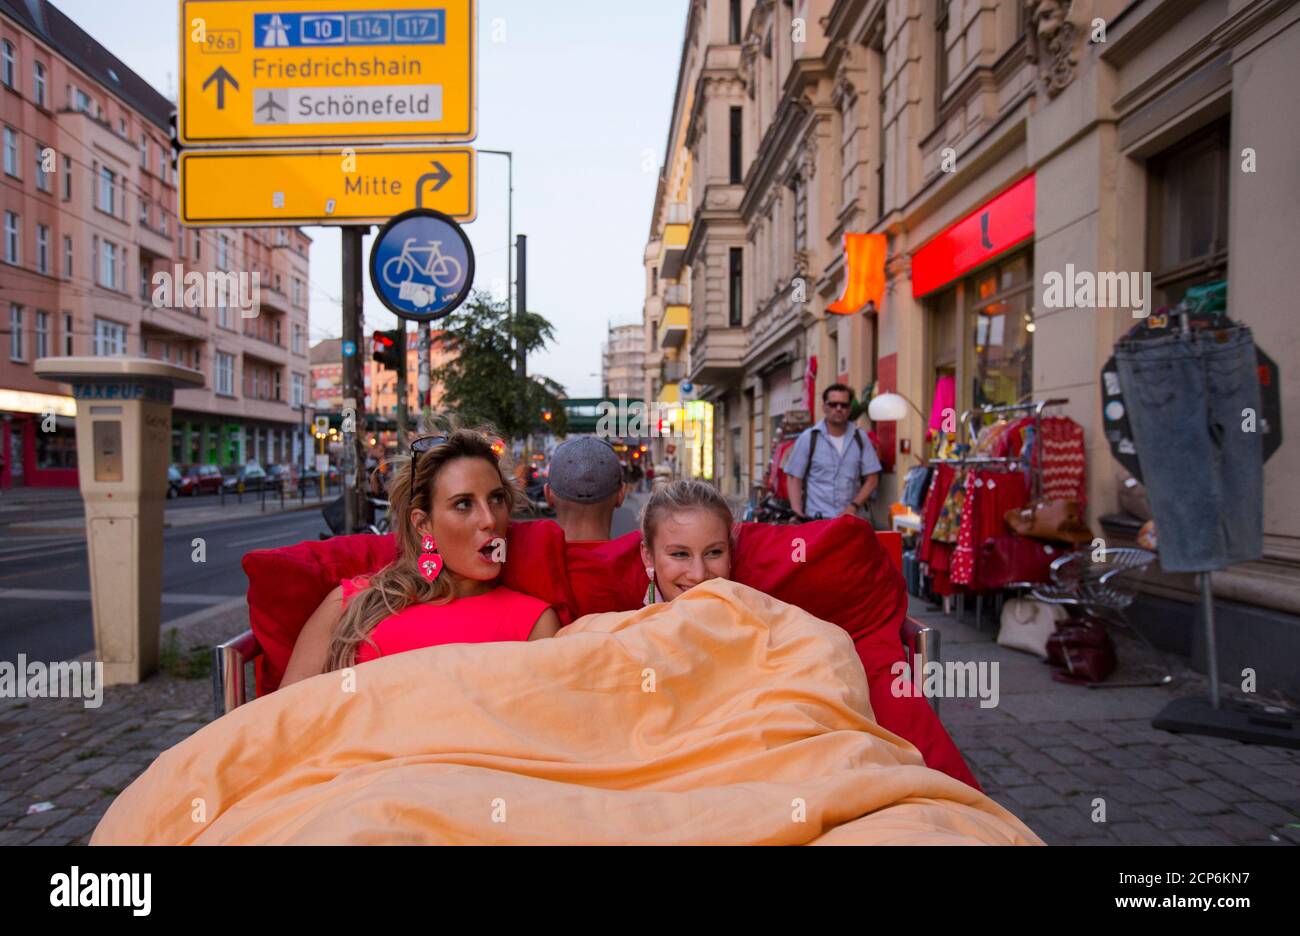 Touristen Caro (L) und Anna aus München fahren auf einem "Bett Bike" im  Bezirk Prenzlauer Berg in Berlin 5. Juli 2013. Richard Eckes des  horizontalen Berlin bietet Touristen reitet auf einem Doppelbett